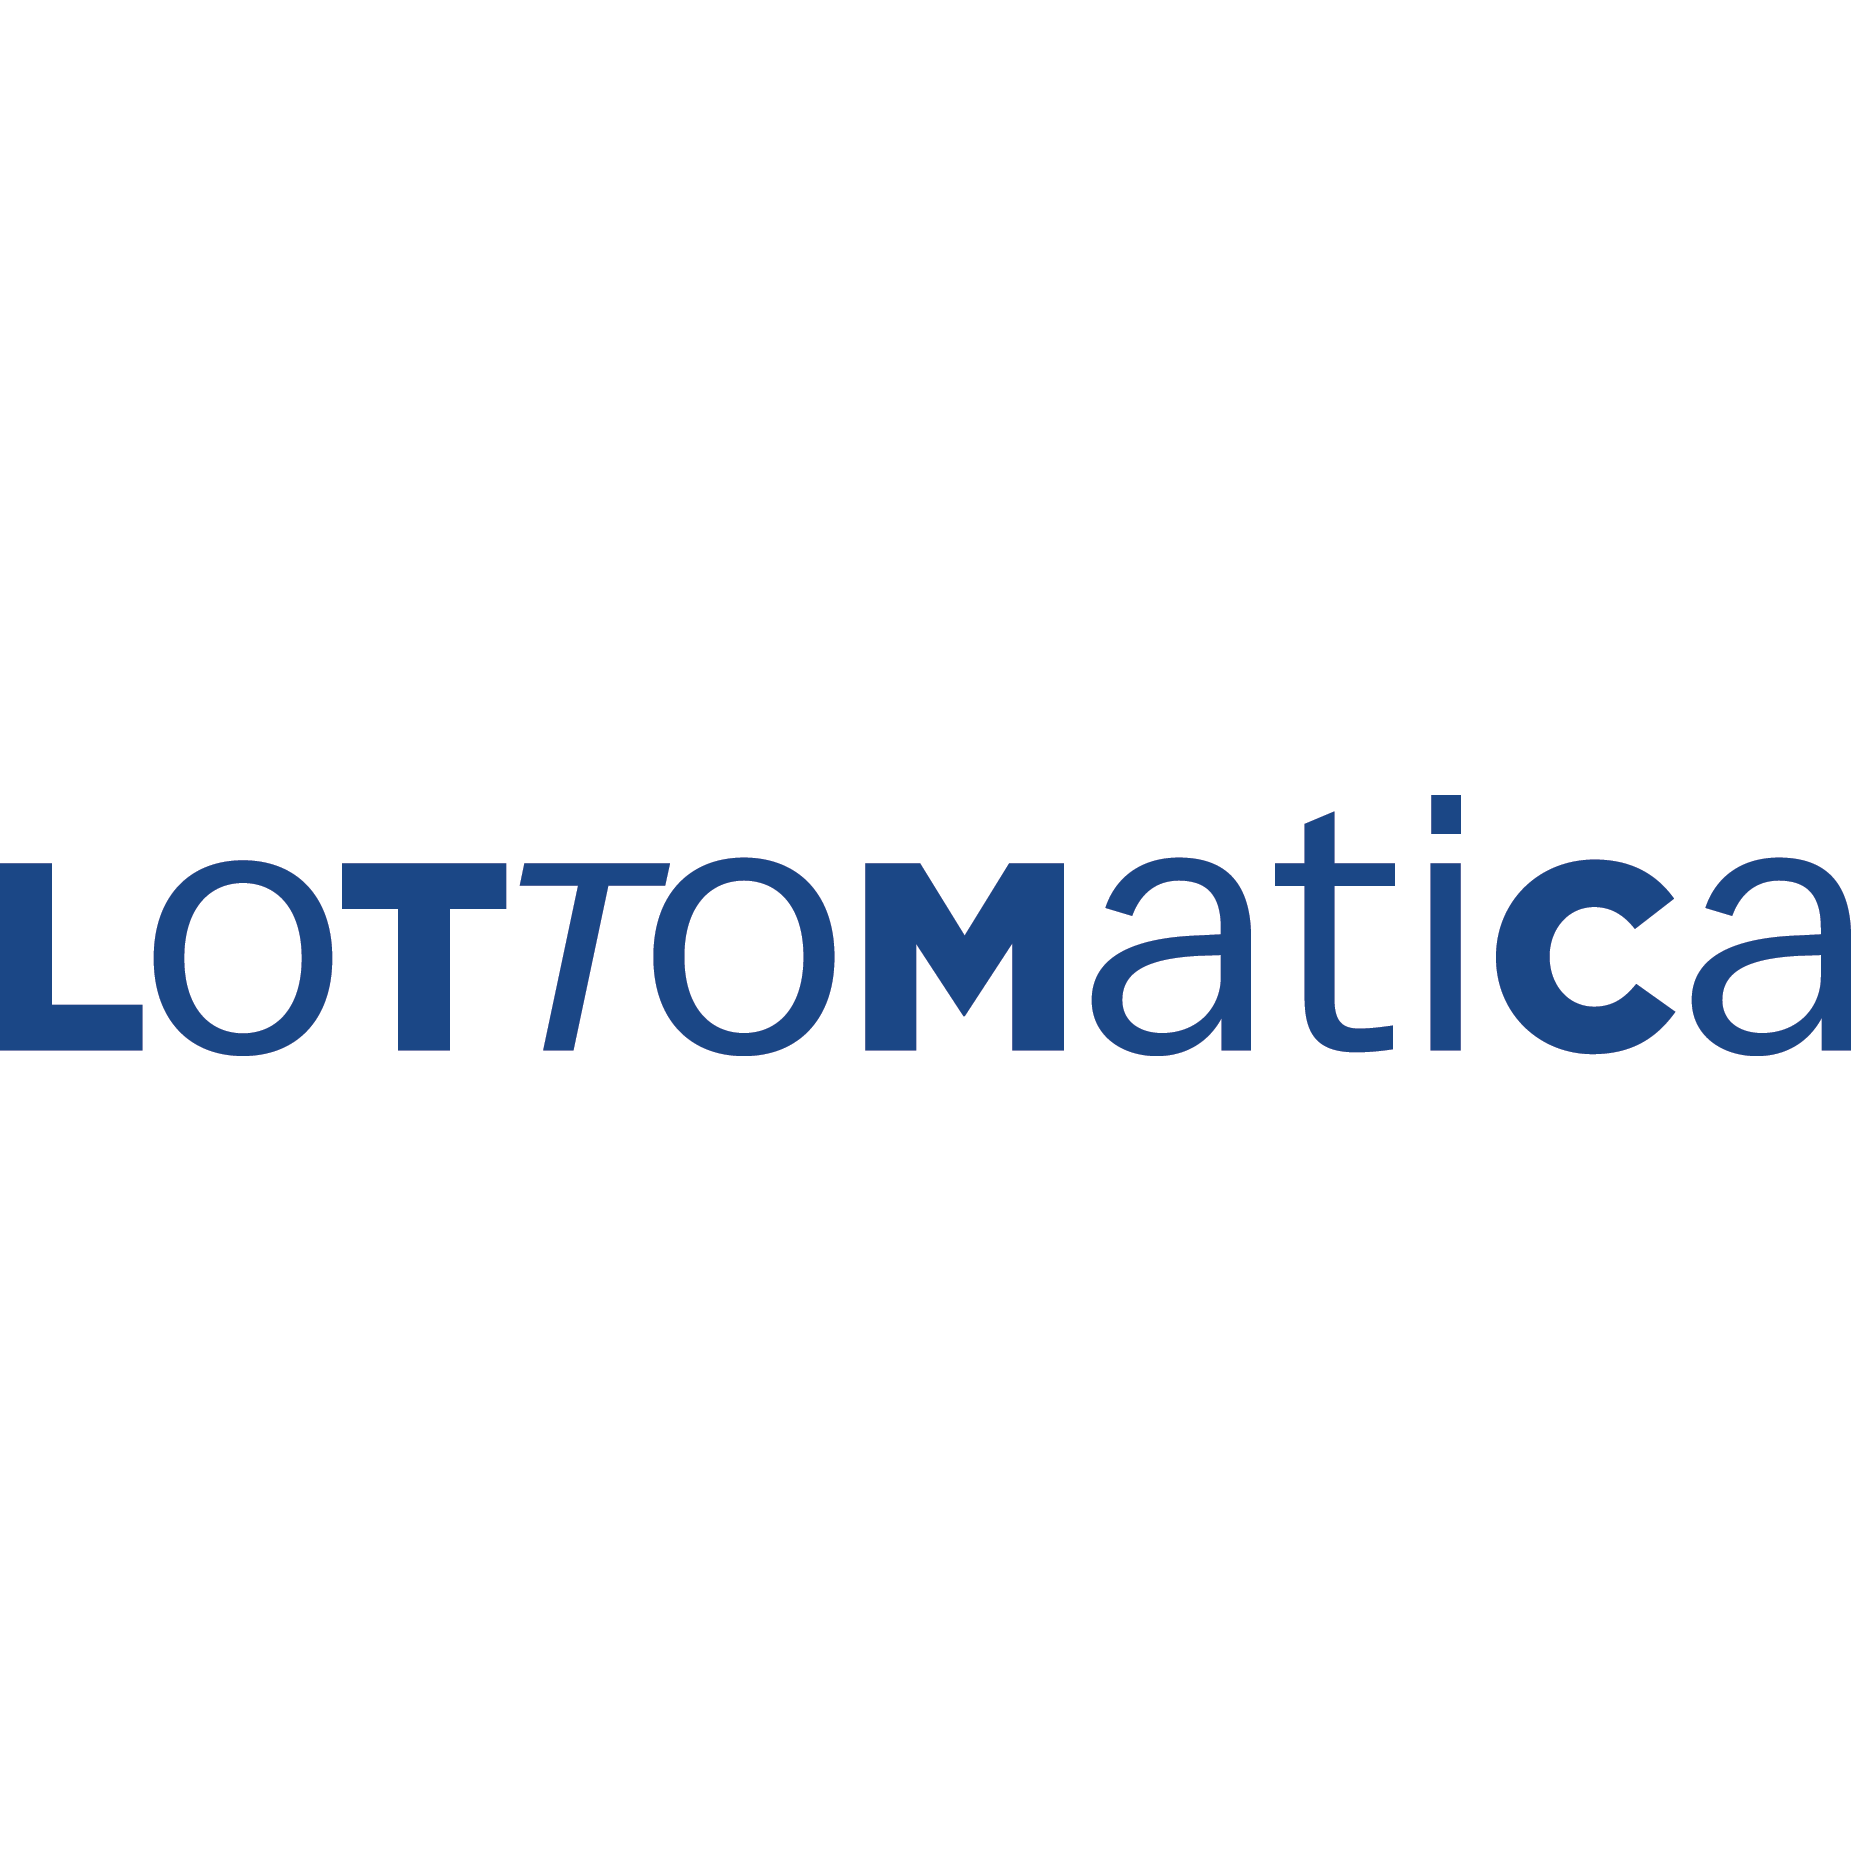 Codice Promo Lottomatica 2022: tutte le info per l’uso